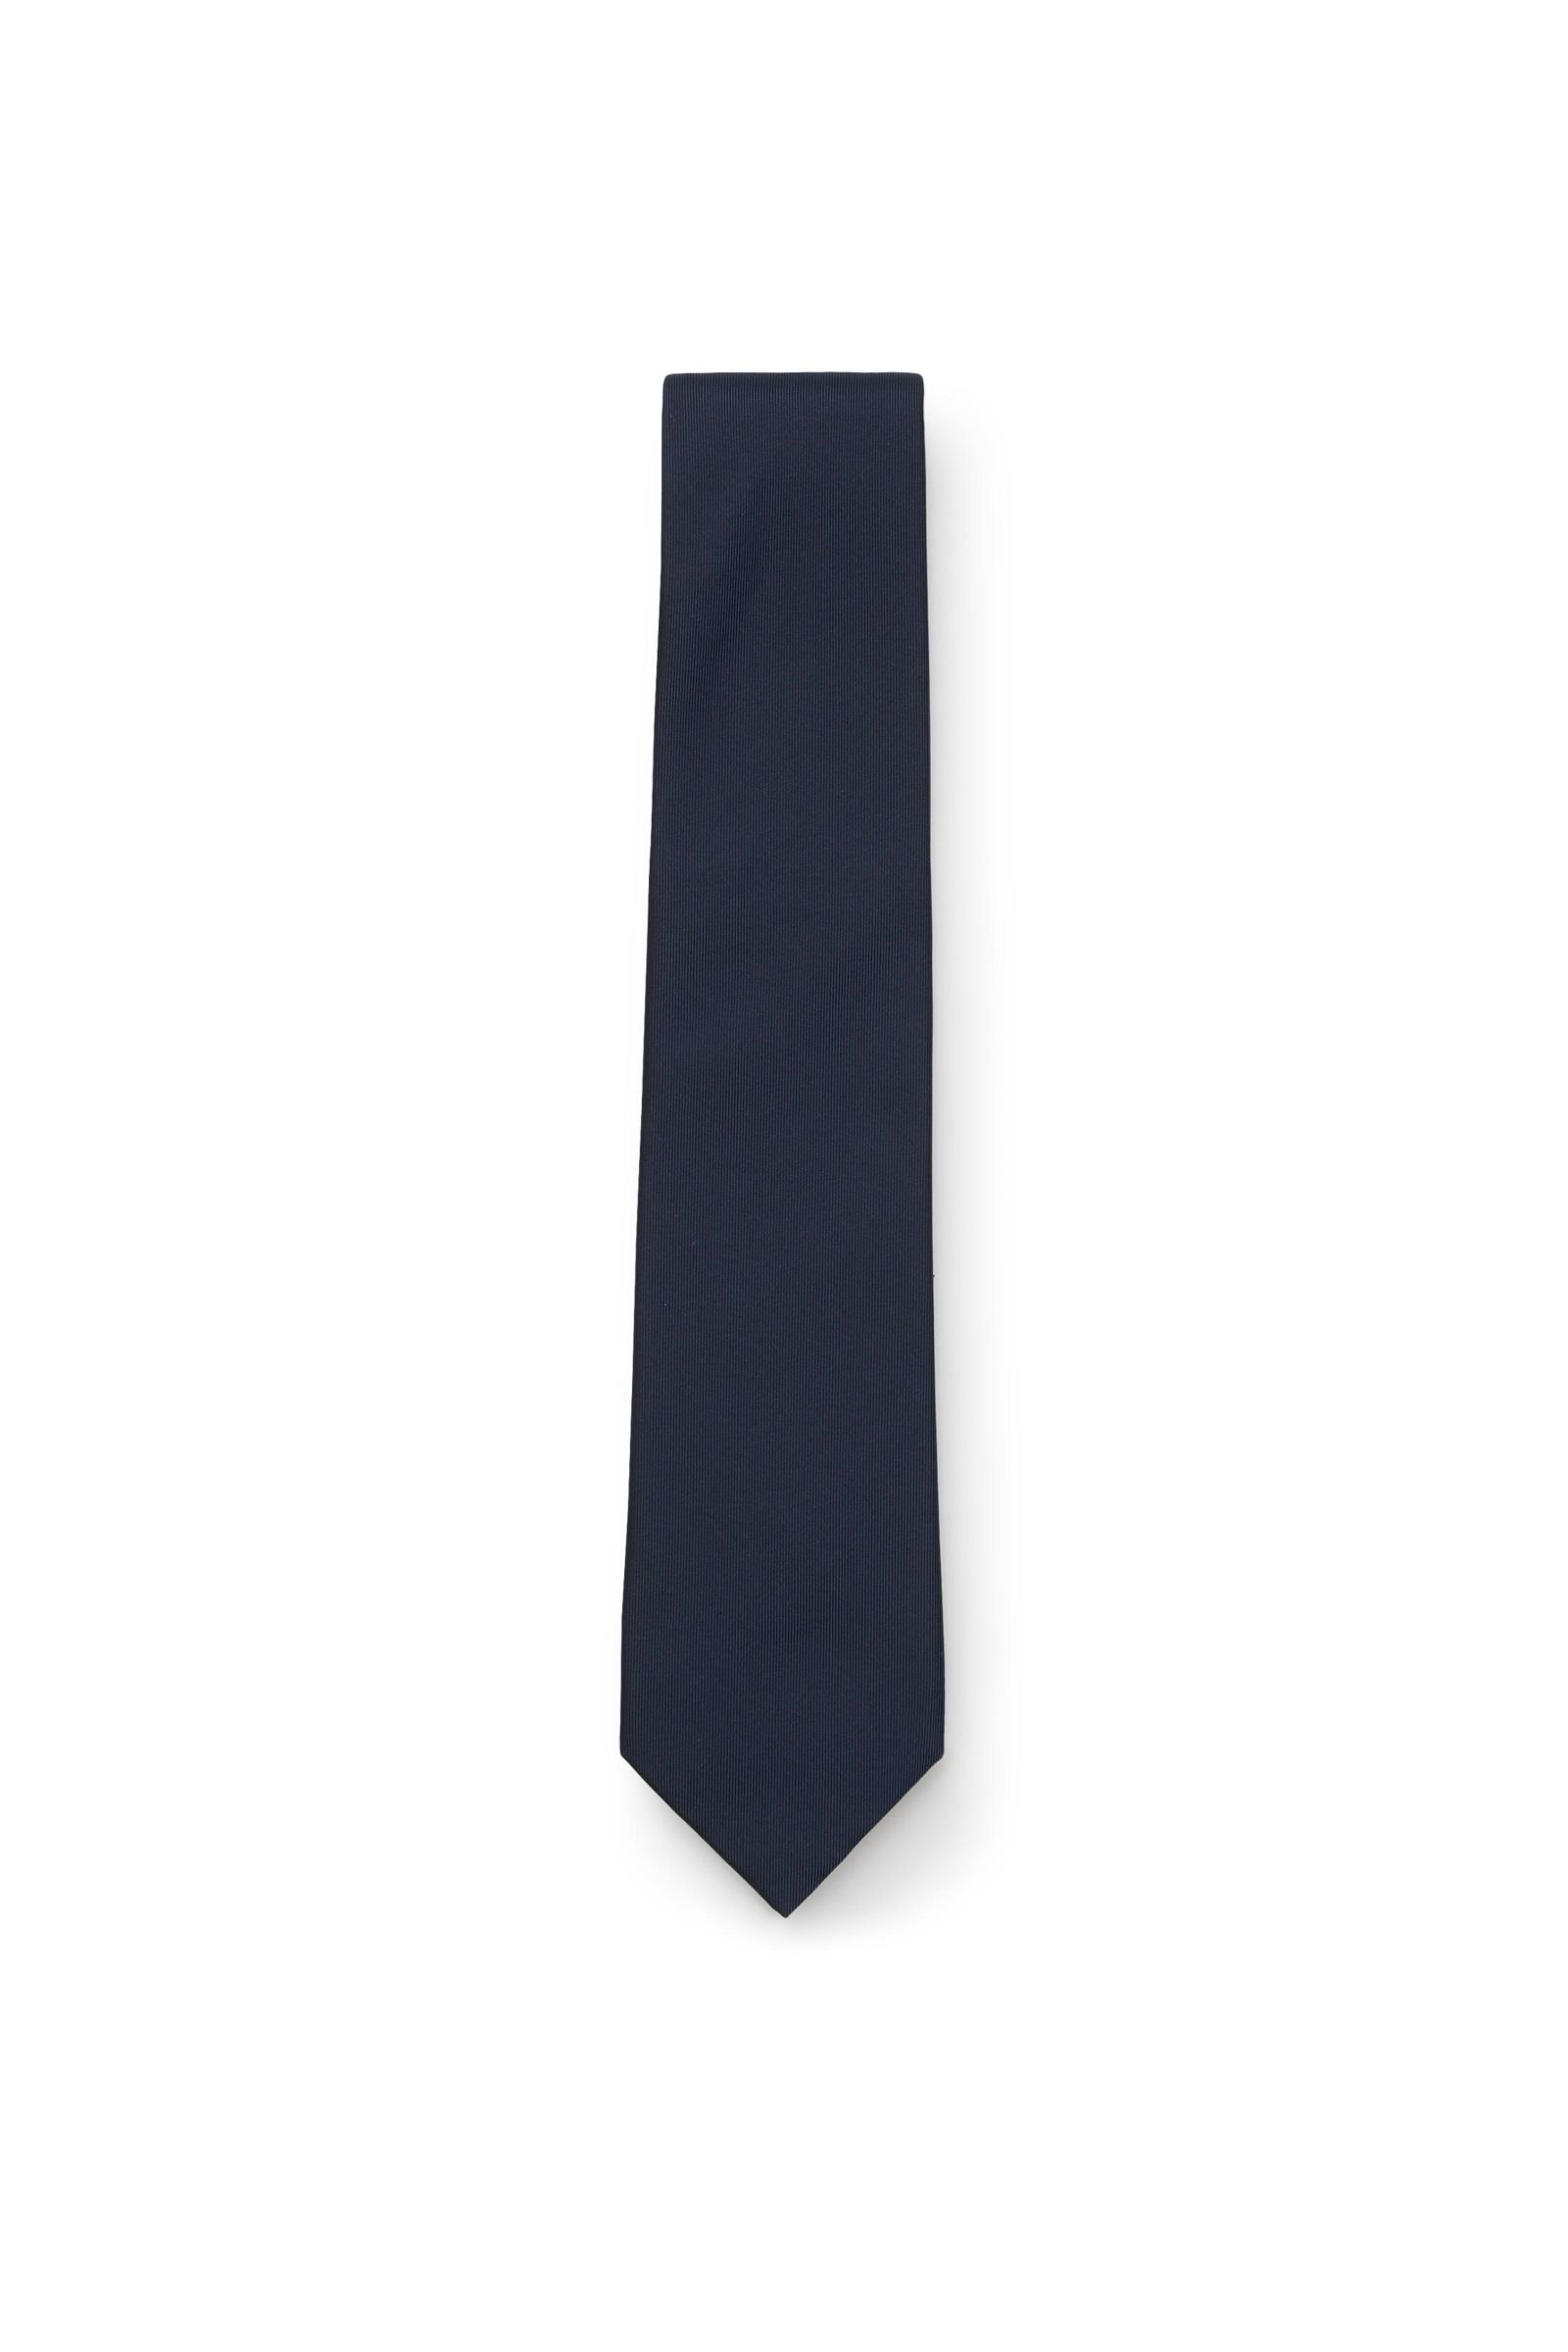 Silk tie dark blue